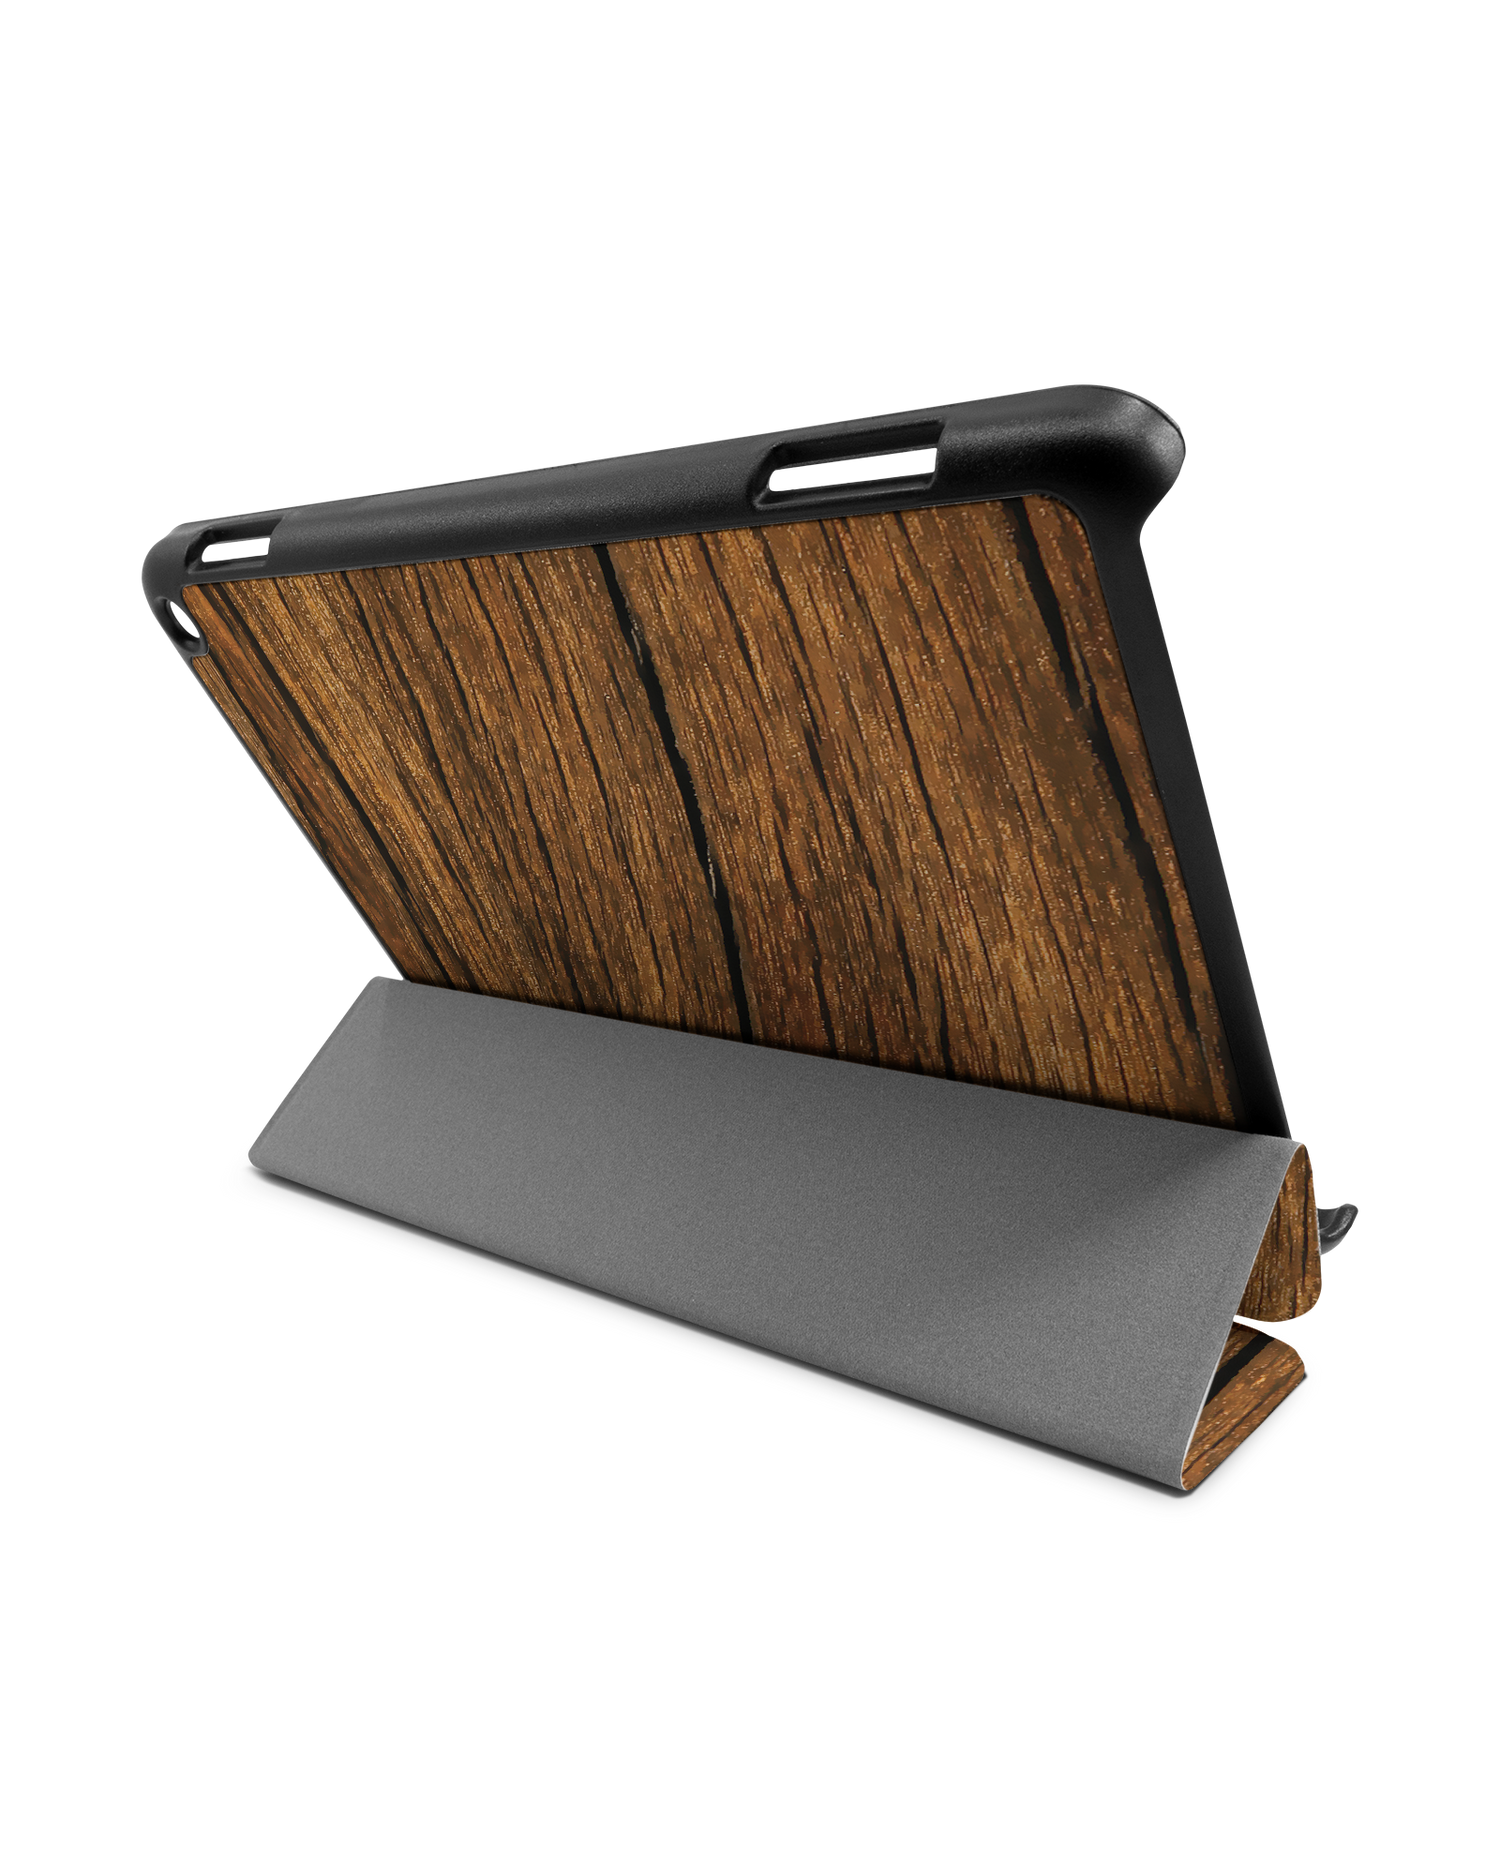 Wood Tablet Smart Case für Amazon Fire HD 8 (2022), Amazon Fire HD 8 Plus (2022), Amazon Fire HD 8 (2020), Amazon Fire HD 8 Plus (2020): Aufgestellt im Querformat